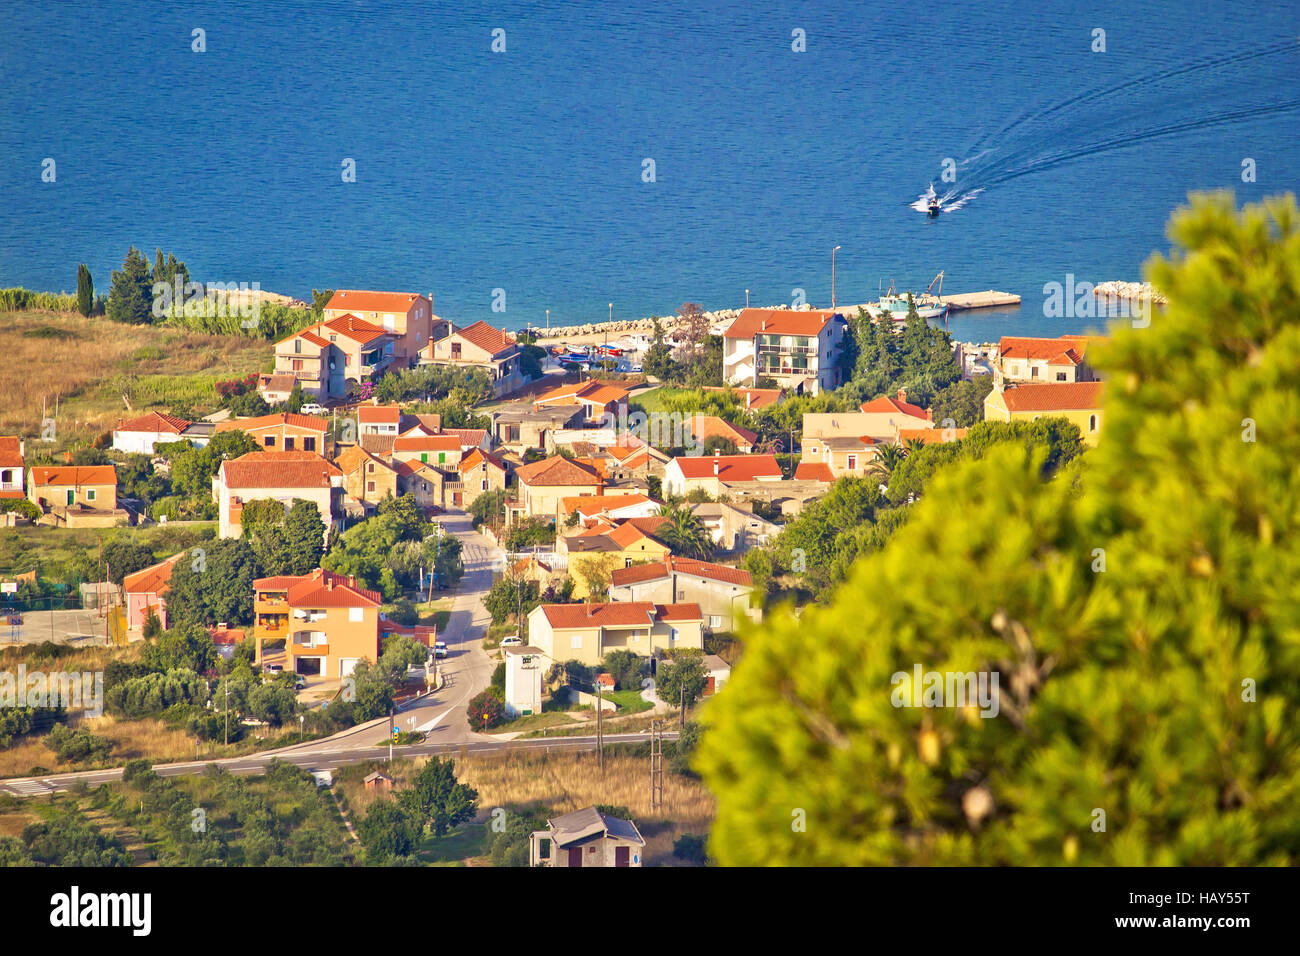 Village côtier Dobropoljana sur l'île de Pasman vue aérienne, la Dalmatie, Croatie Banque D'Images